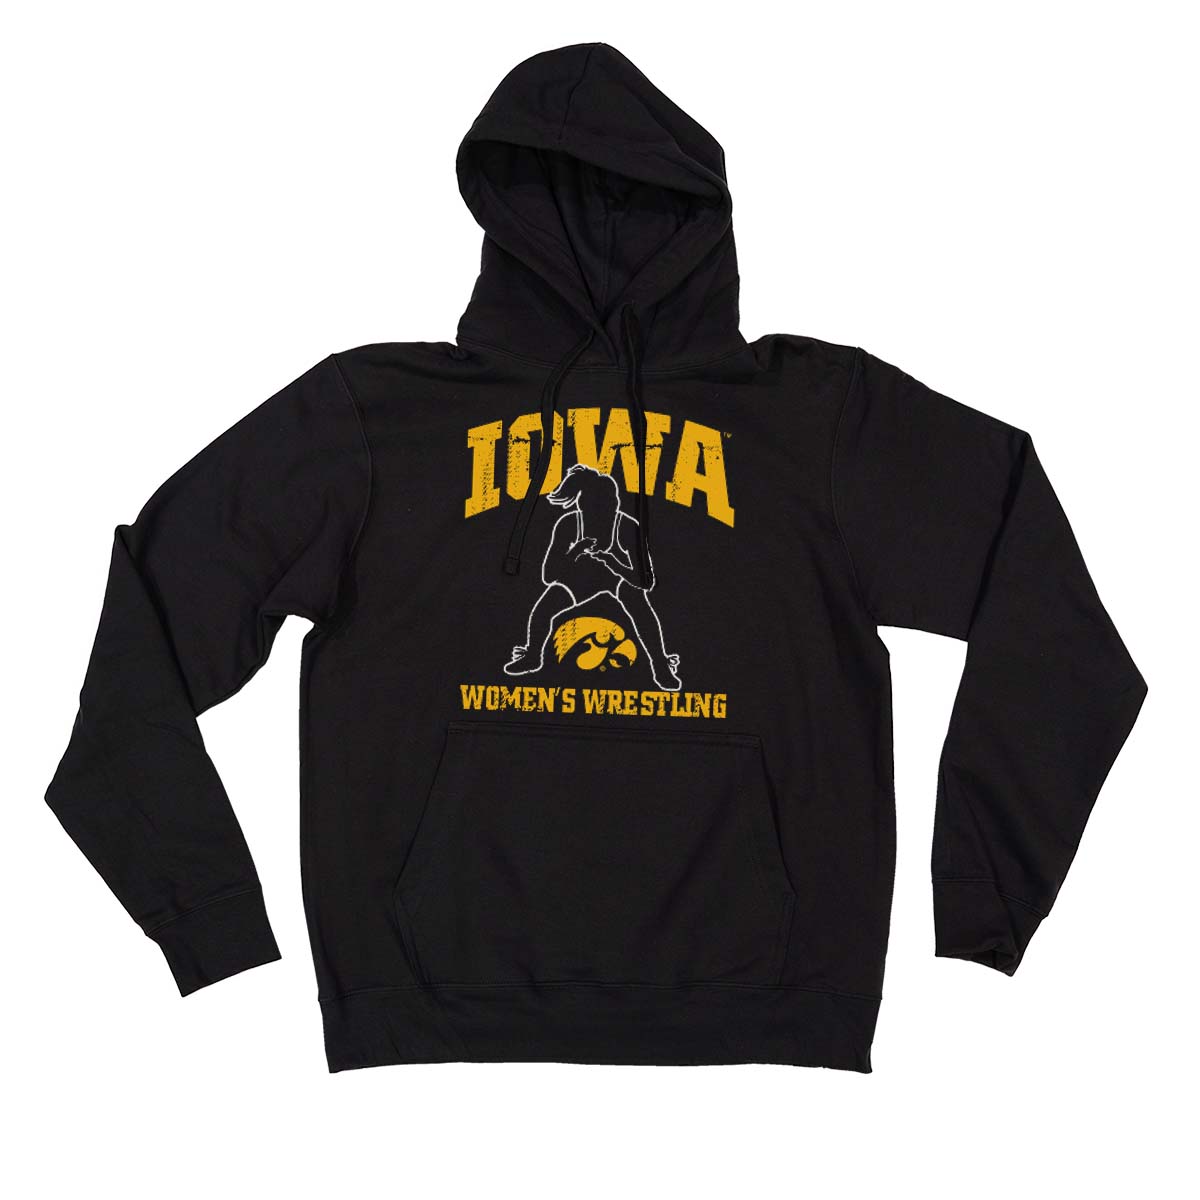 Iowa Women’s Wrestling with Silhouette Men’s/Unisex Hooded Sweatshirt-Black